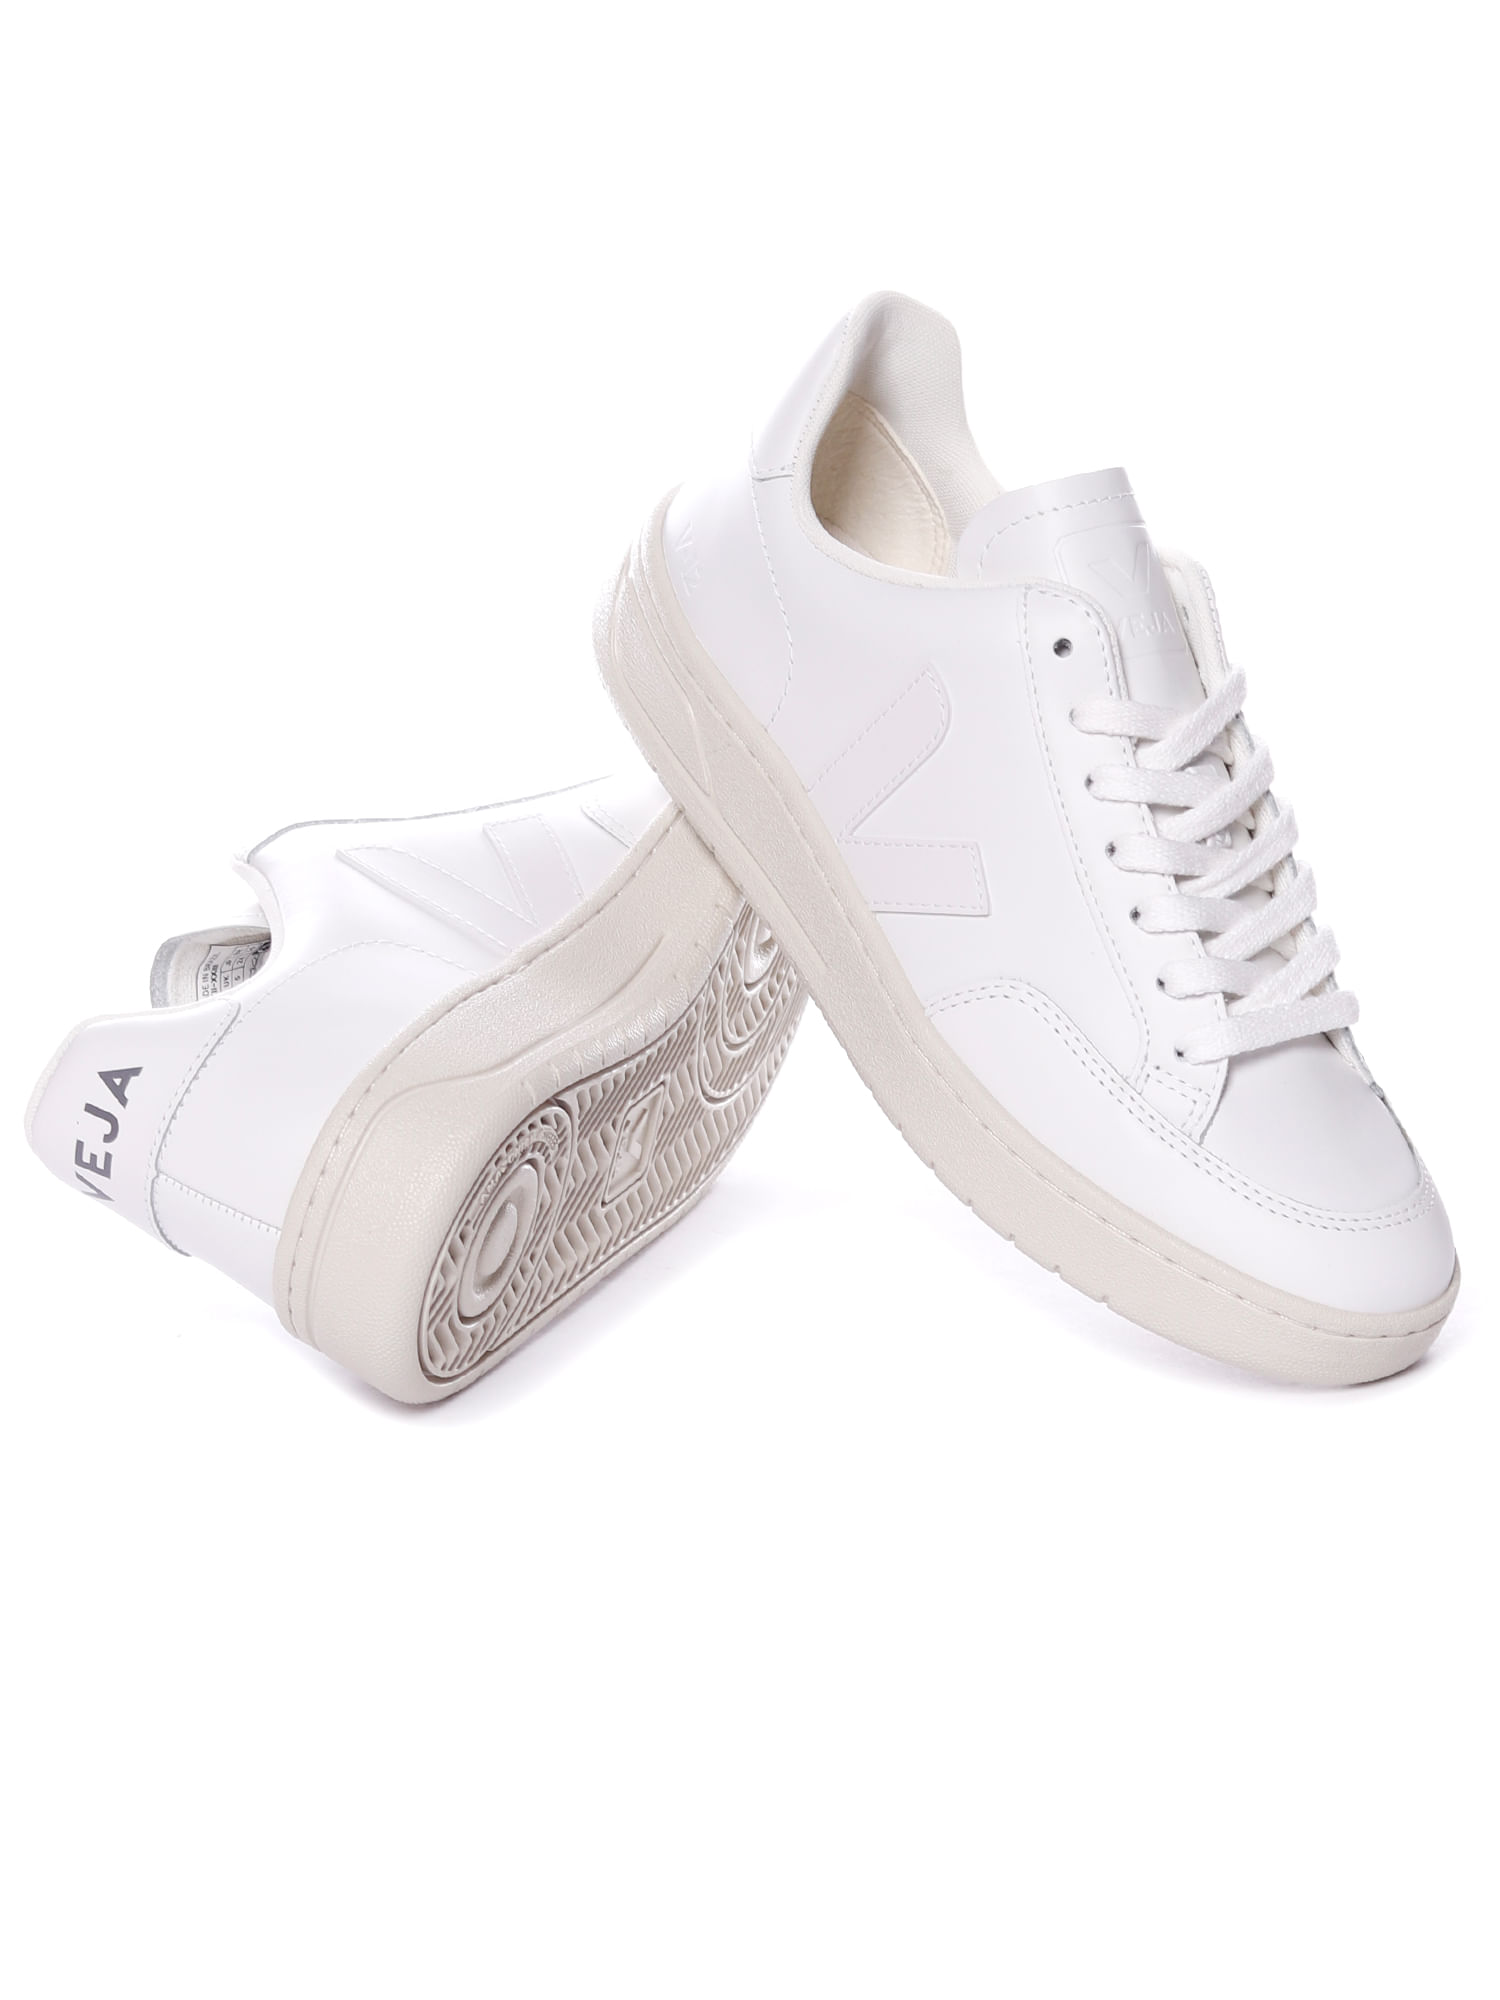 Tenis-veja-v-12-leather-white-White